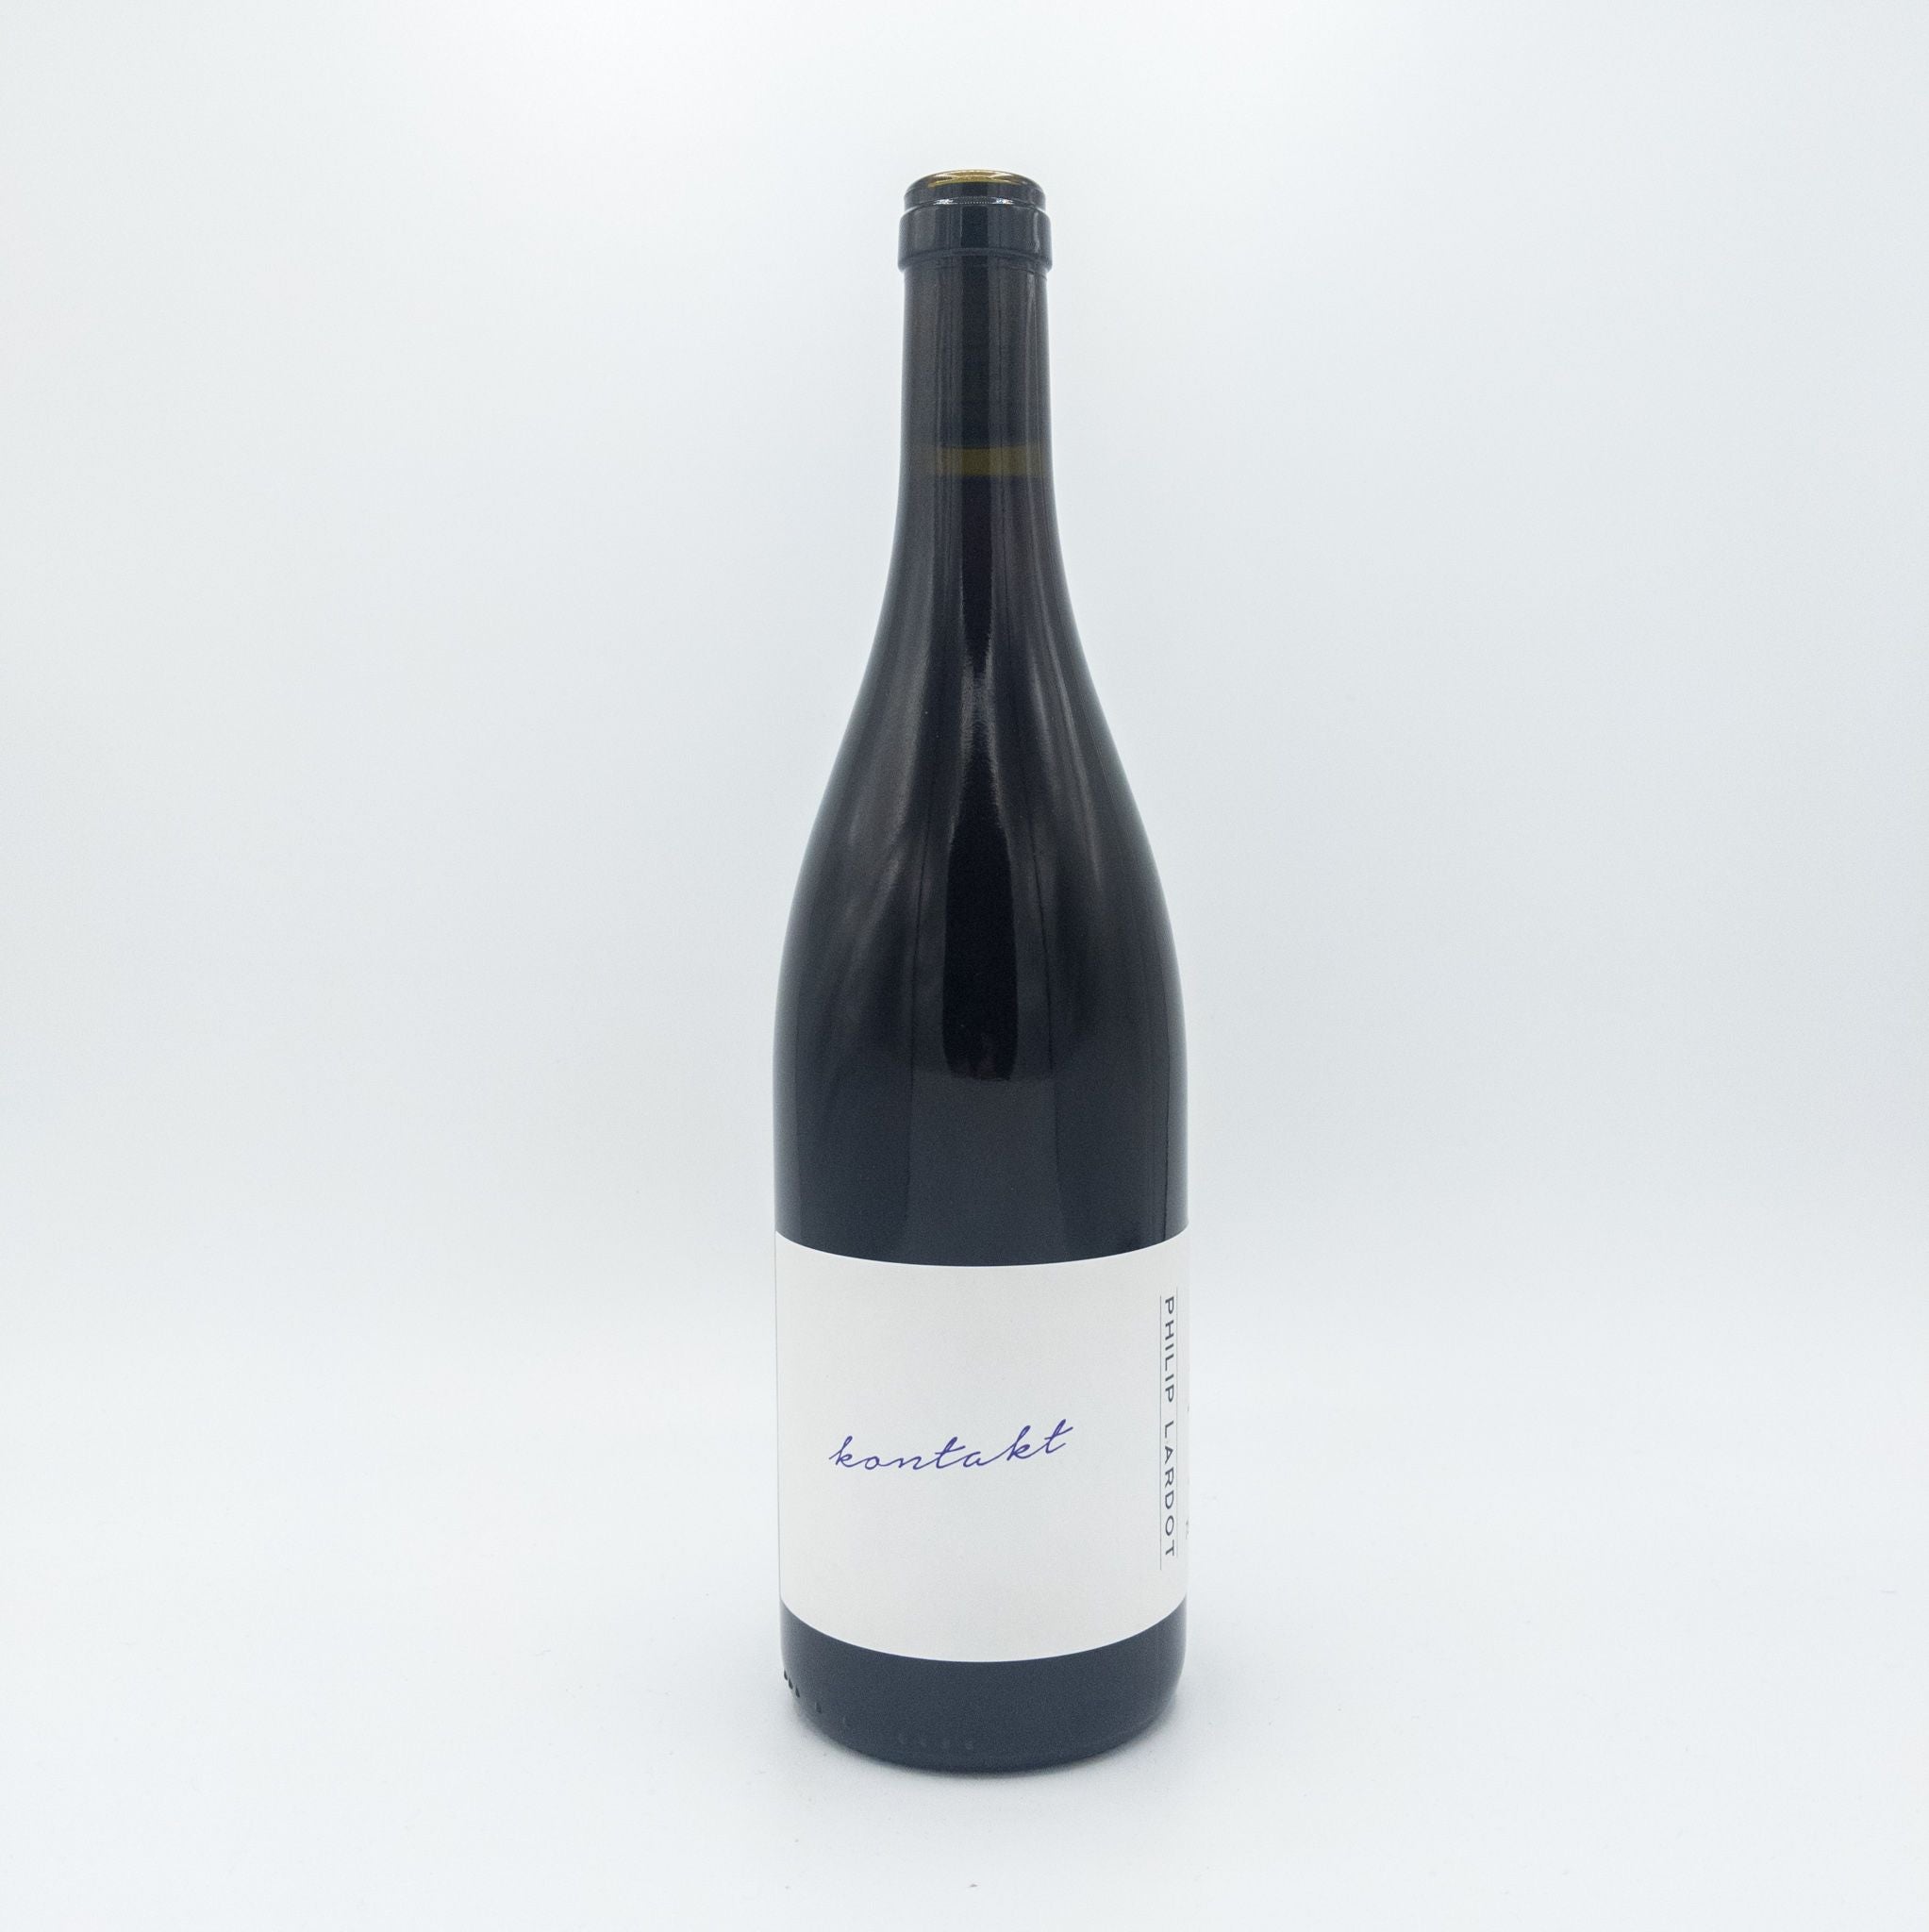 Philip Lardot 'kontakt' Pinot Noir 2020